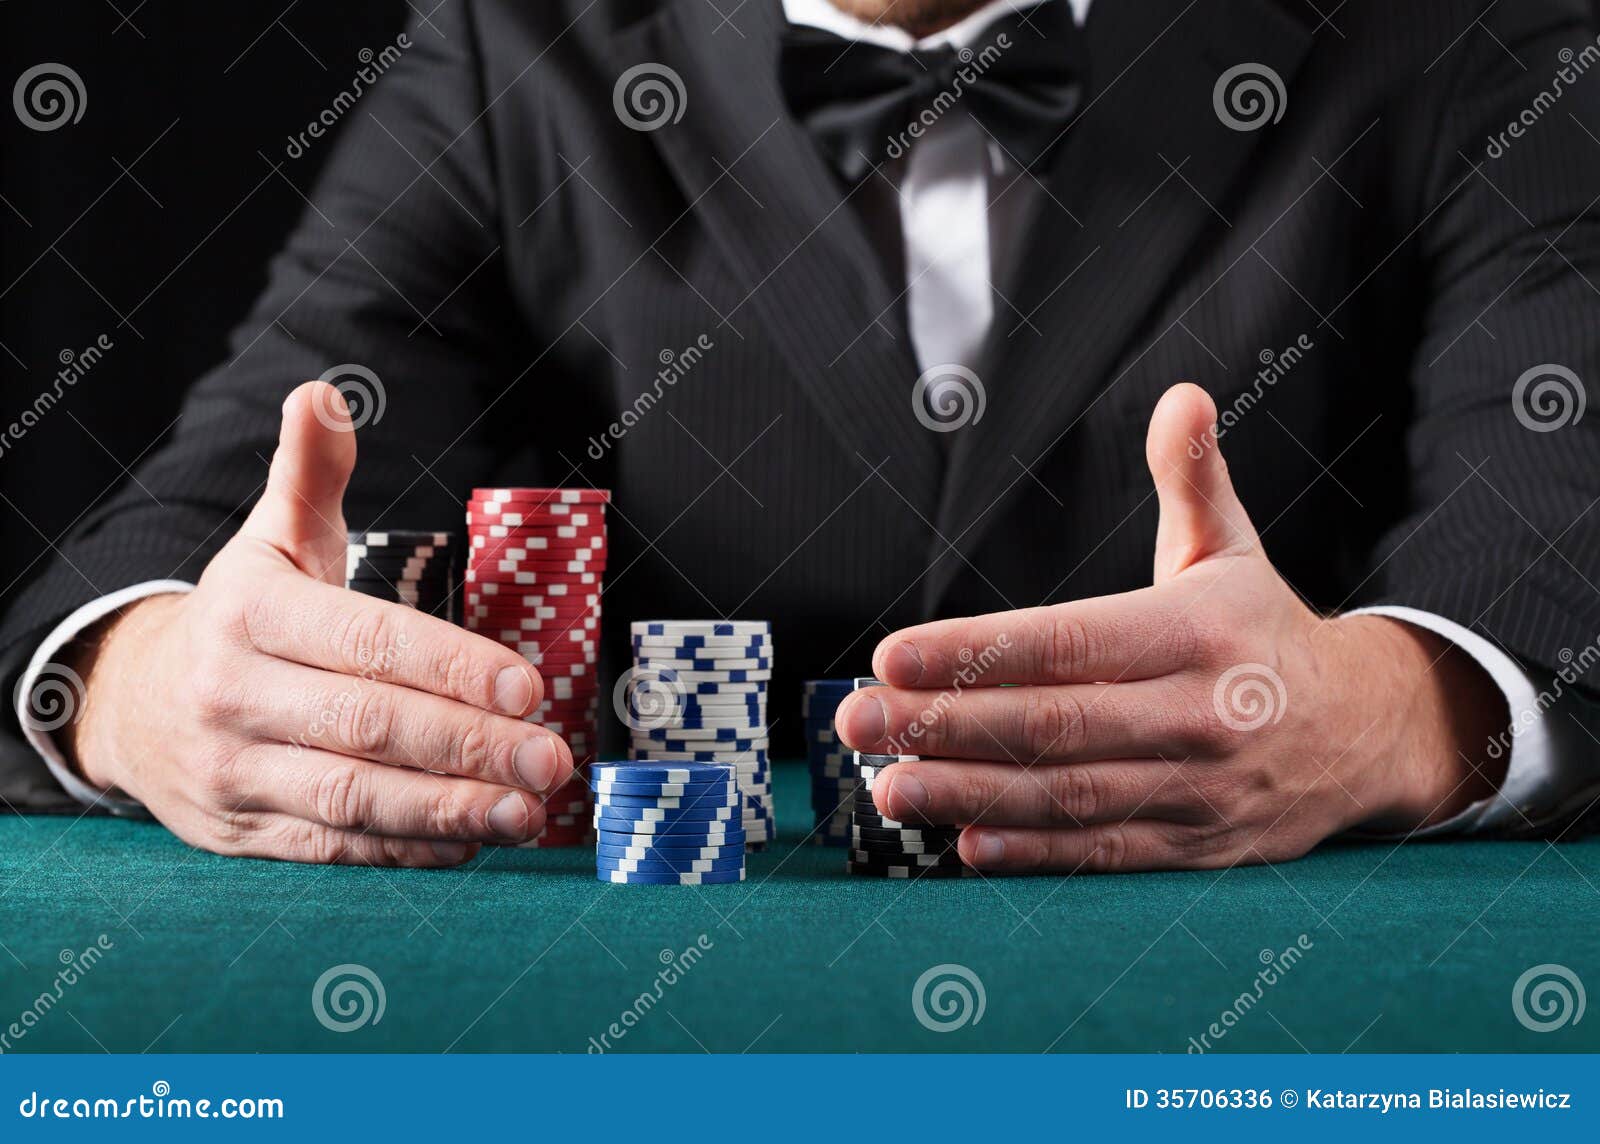 gambler wins all the money